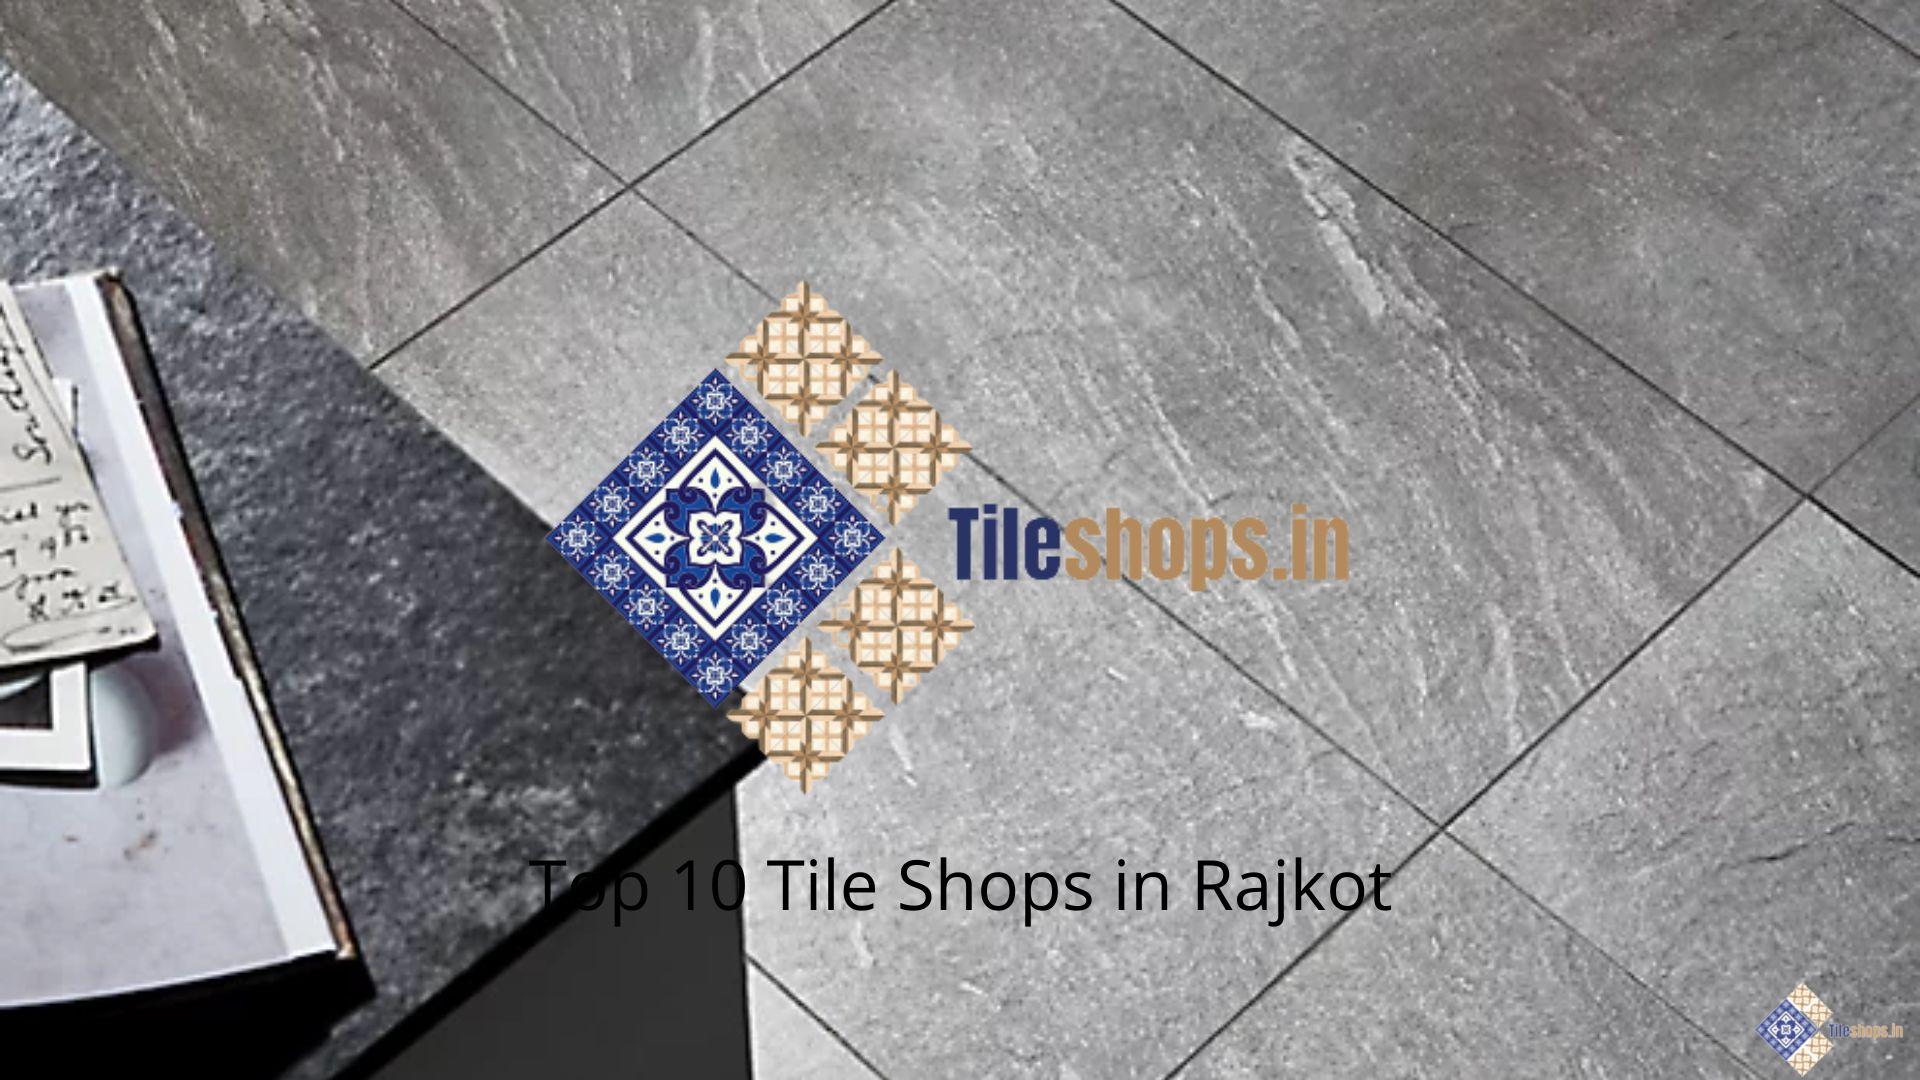 Top 10 Tile Shops in Rajkot